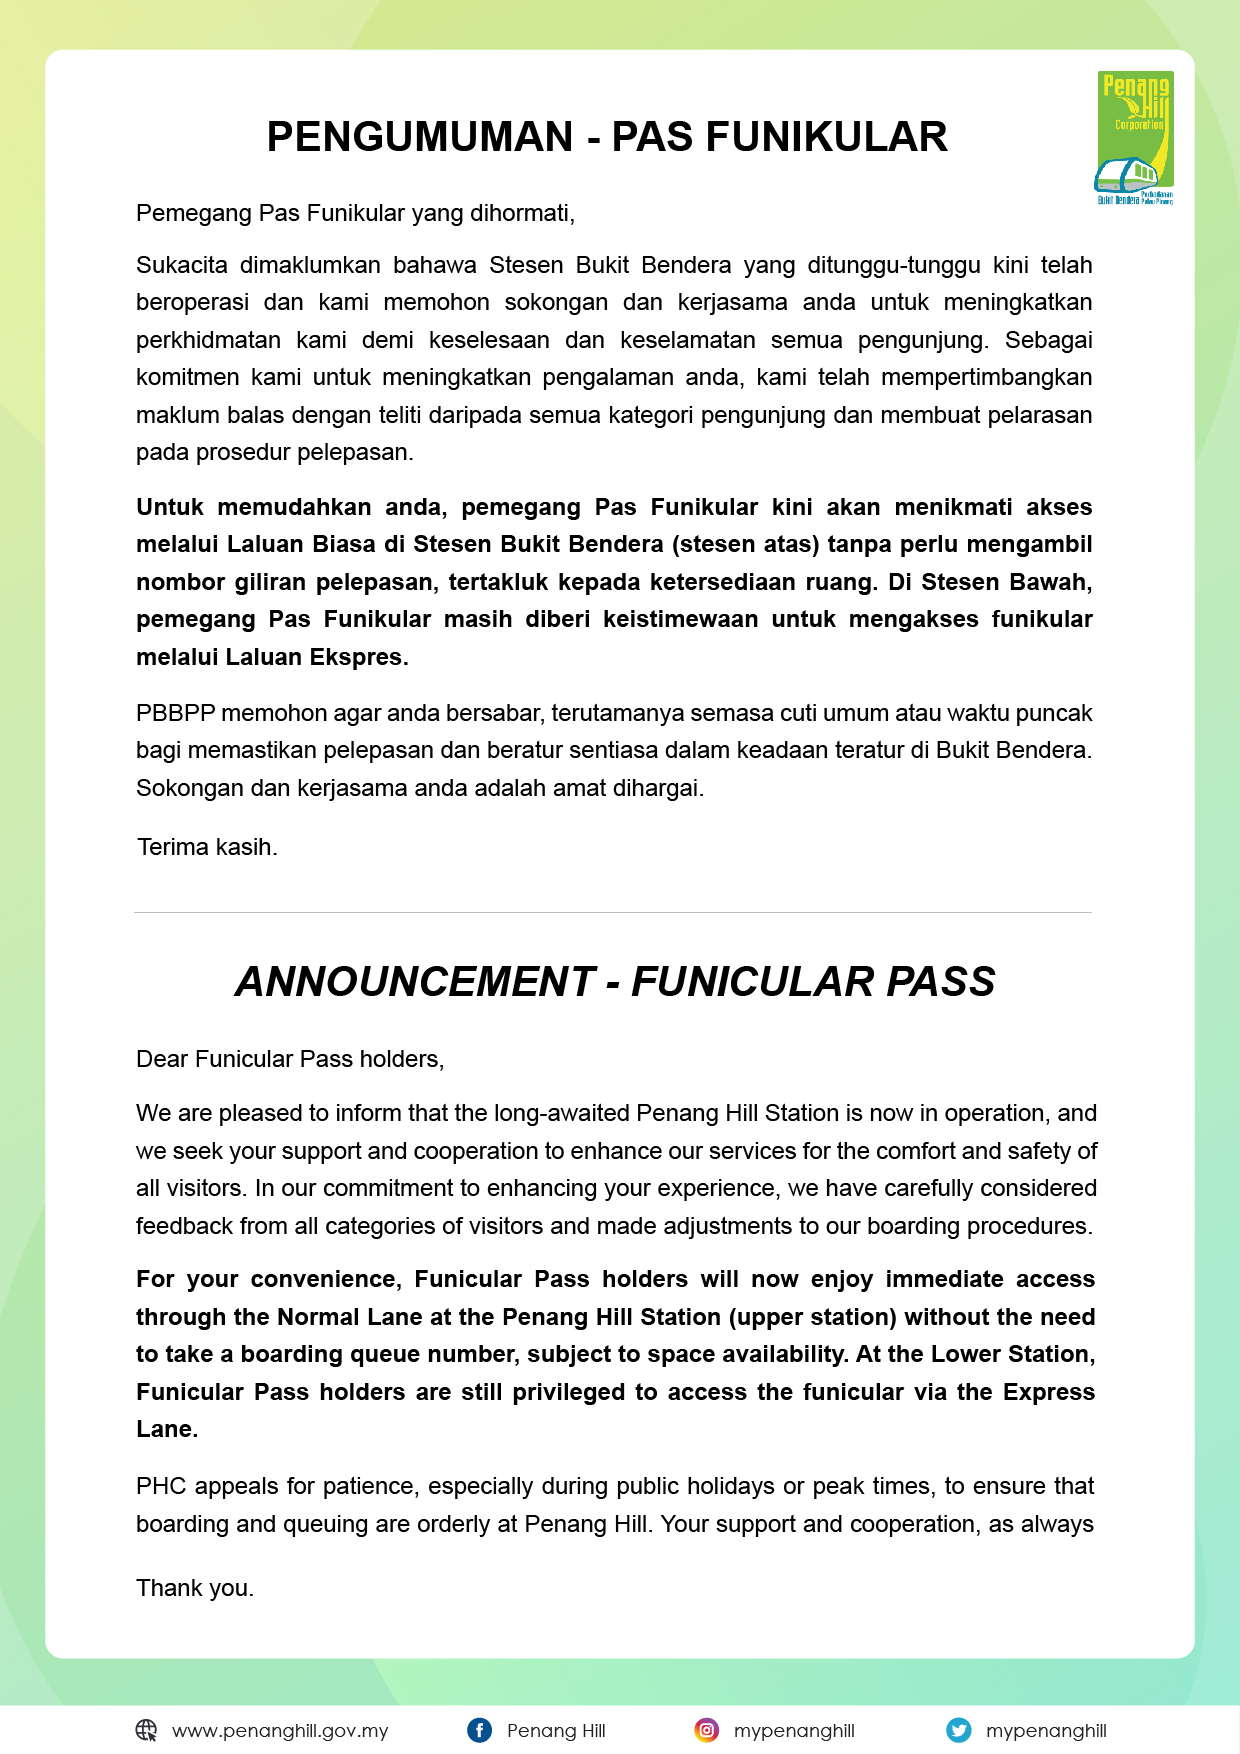 Announcement - Funicular Pass